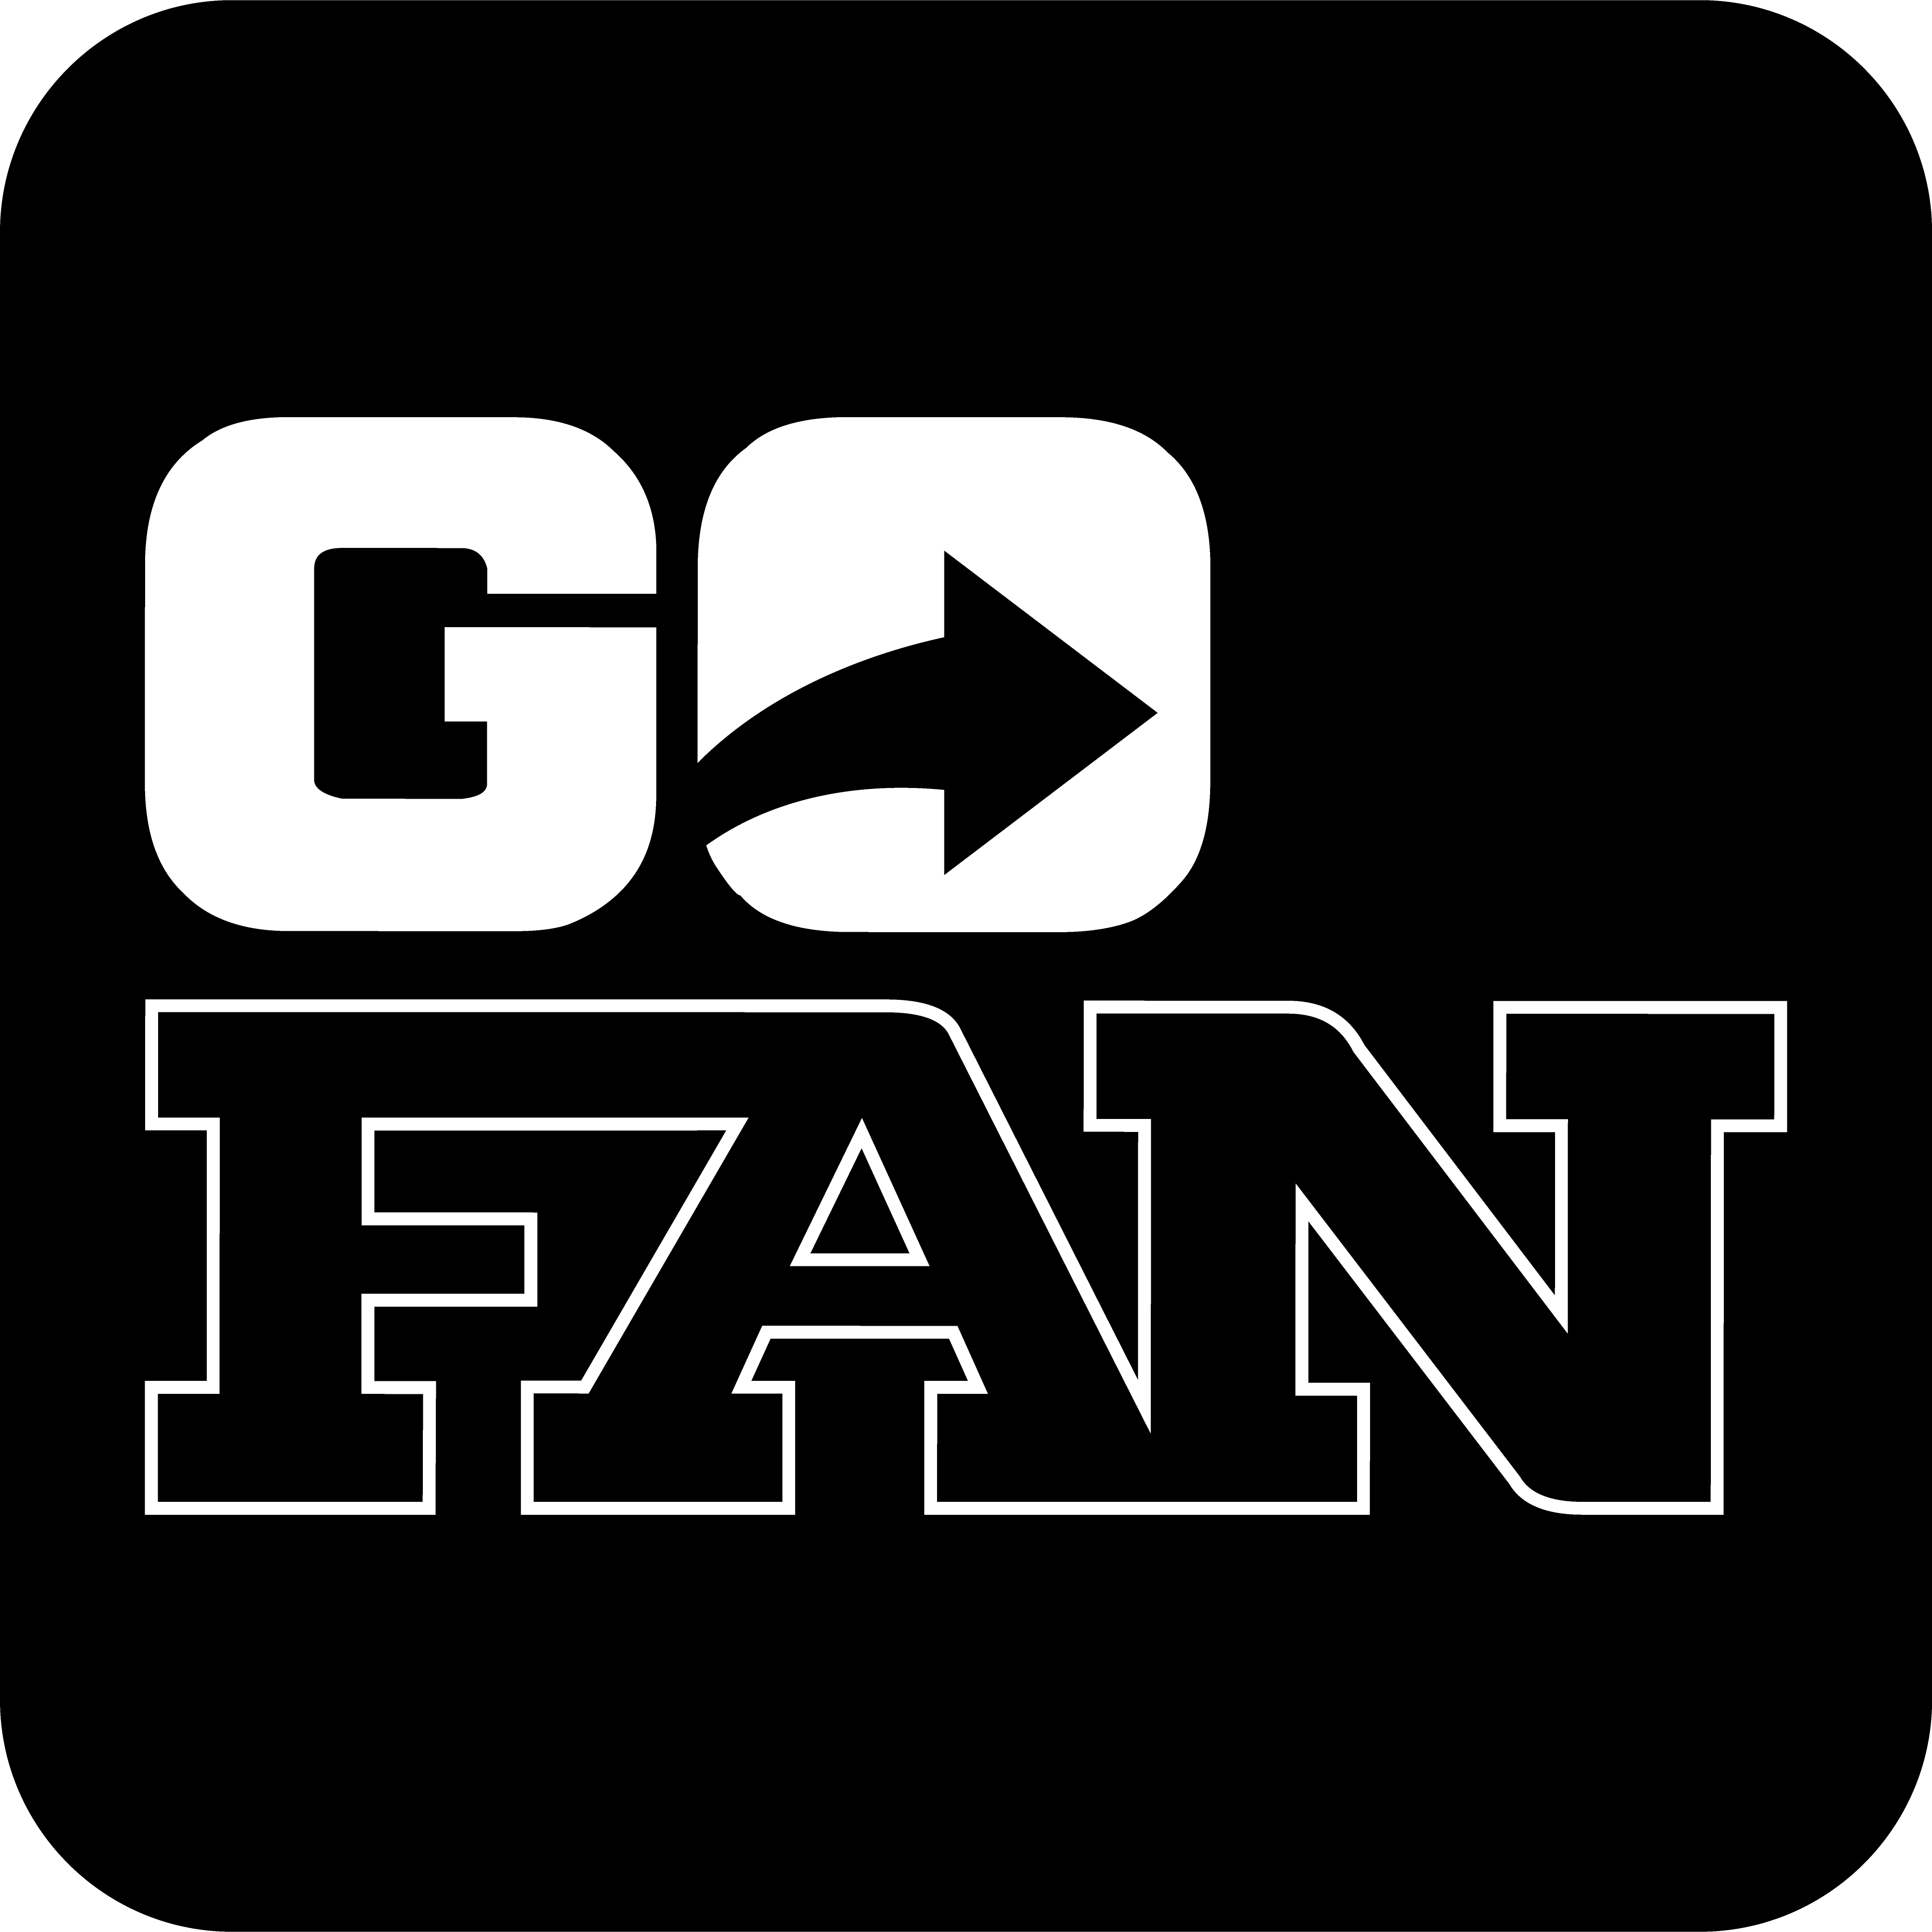 Go Fan